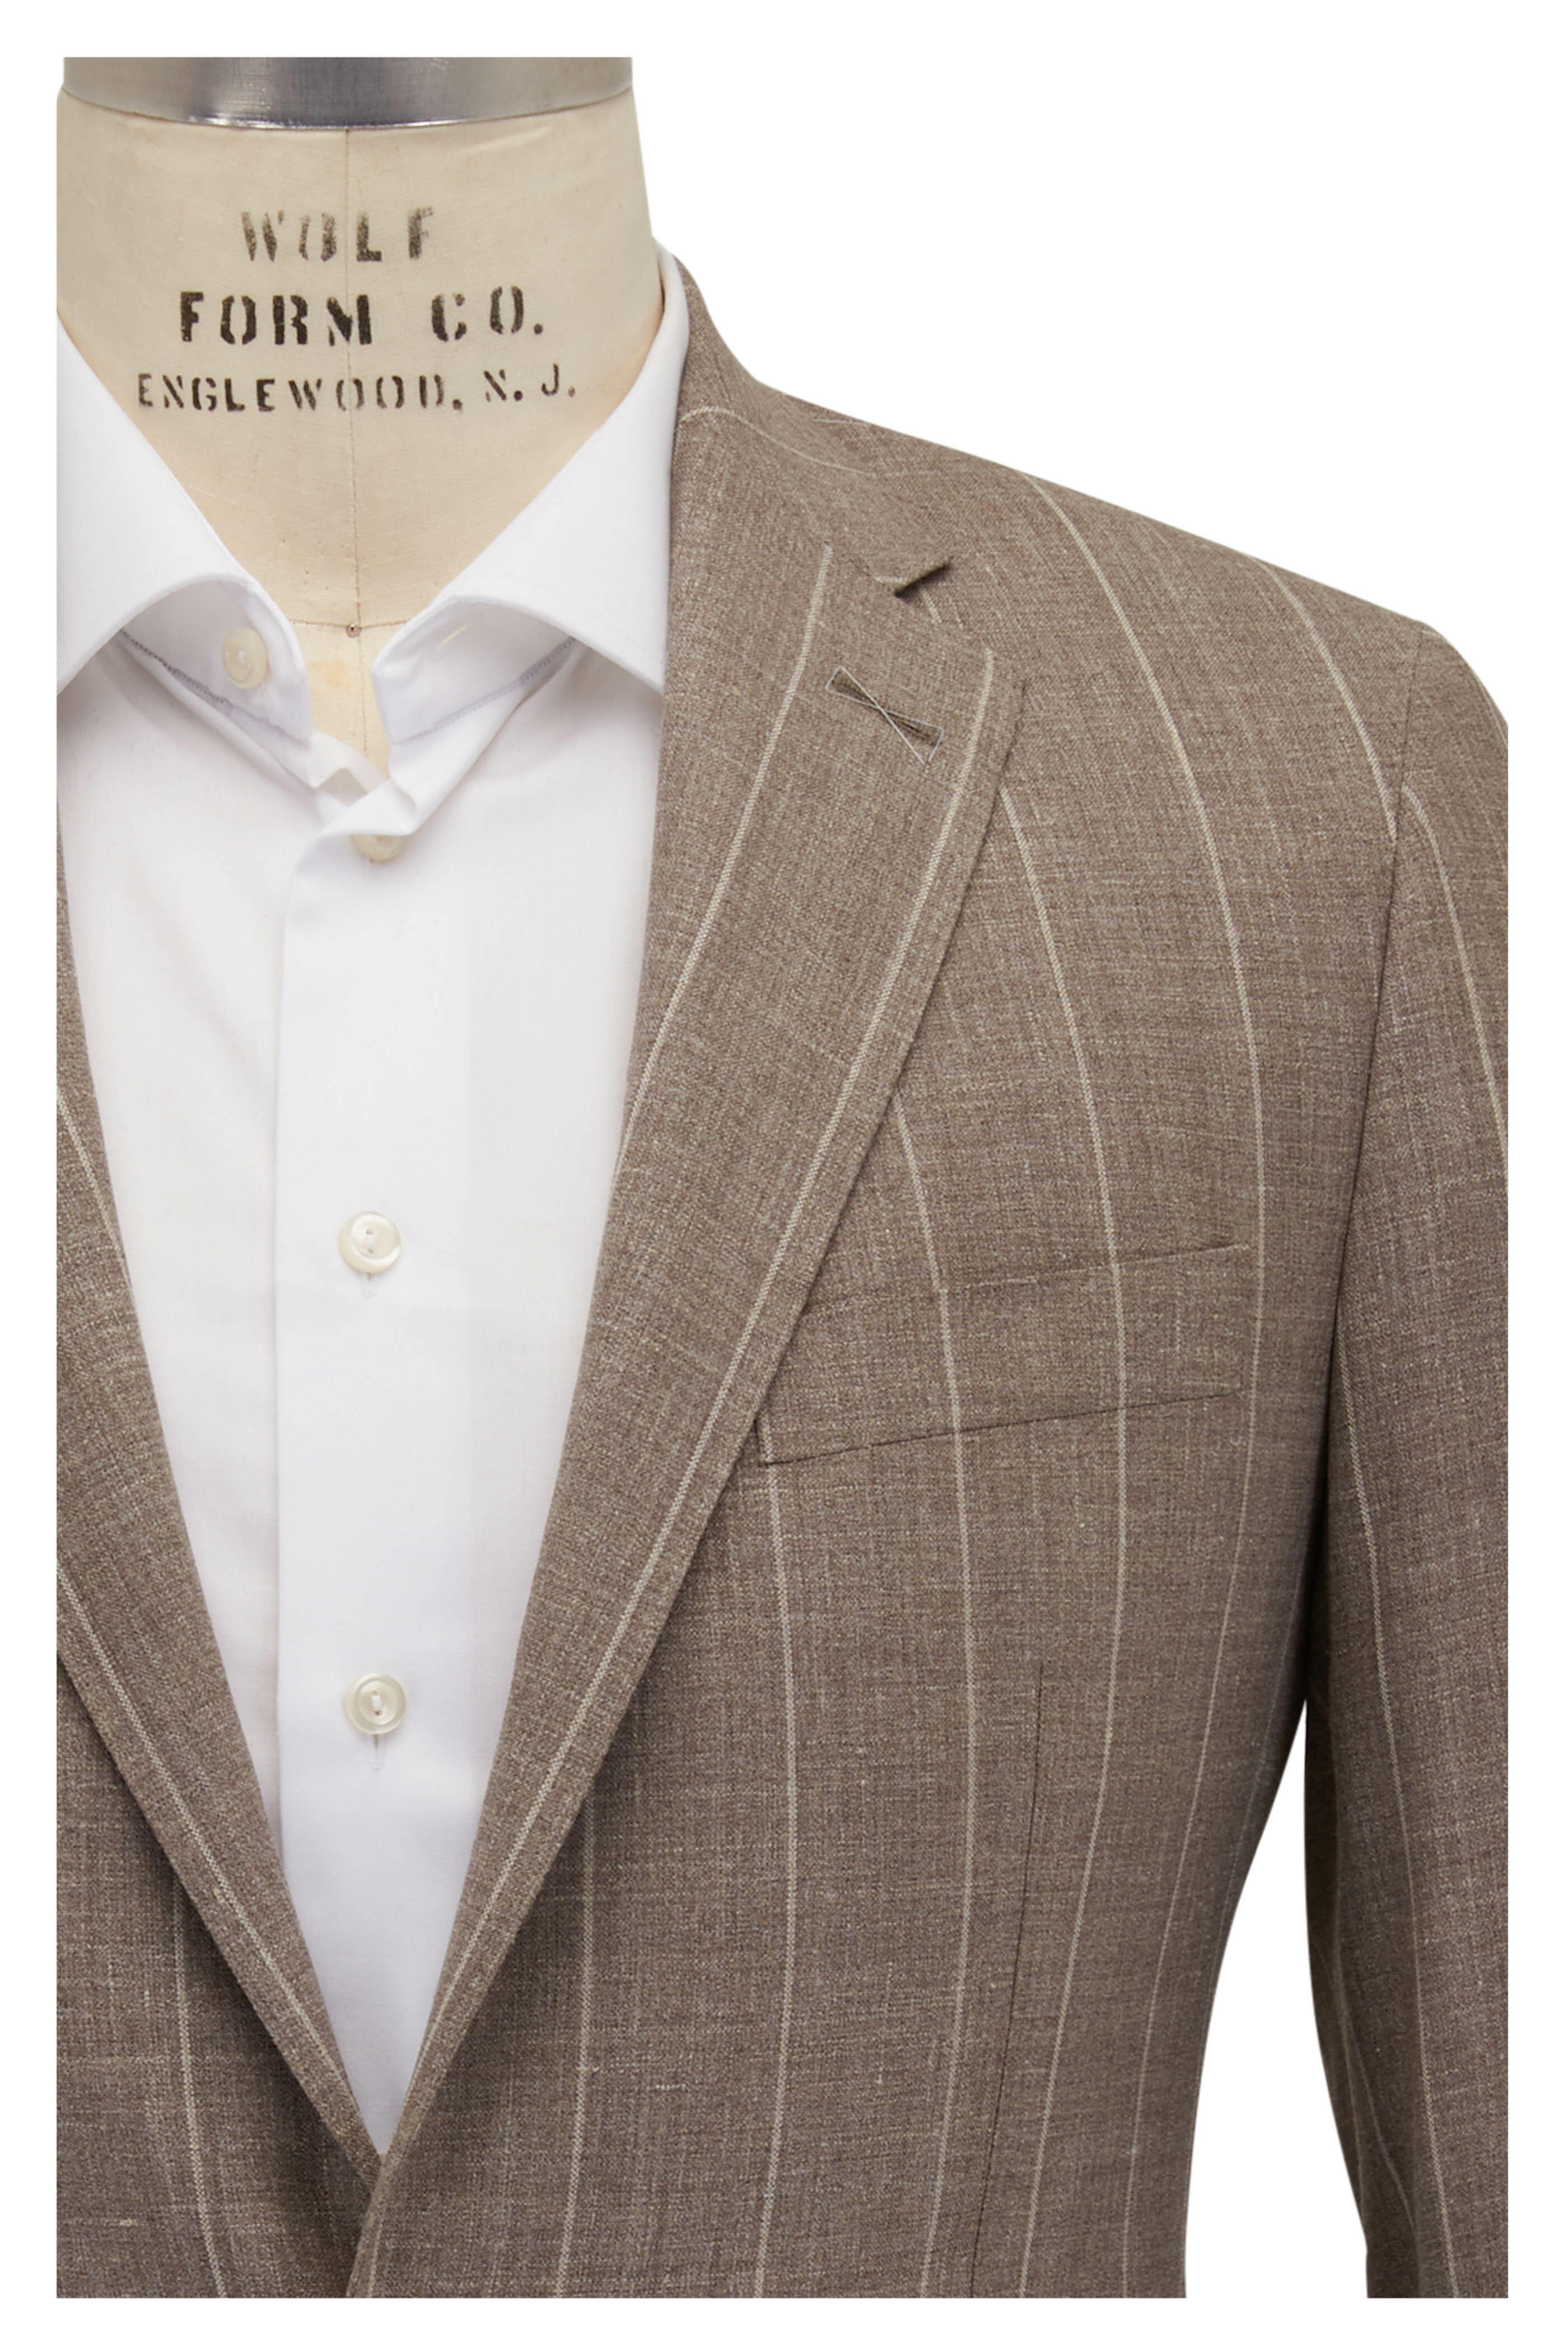 Sold at Auction: Carolina Herrera Wool Sage Pant Suit